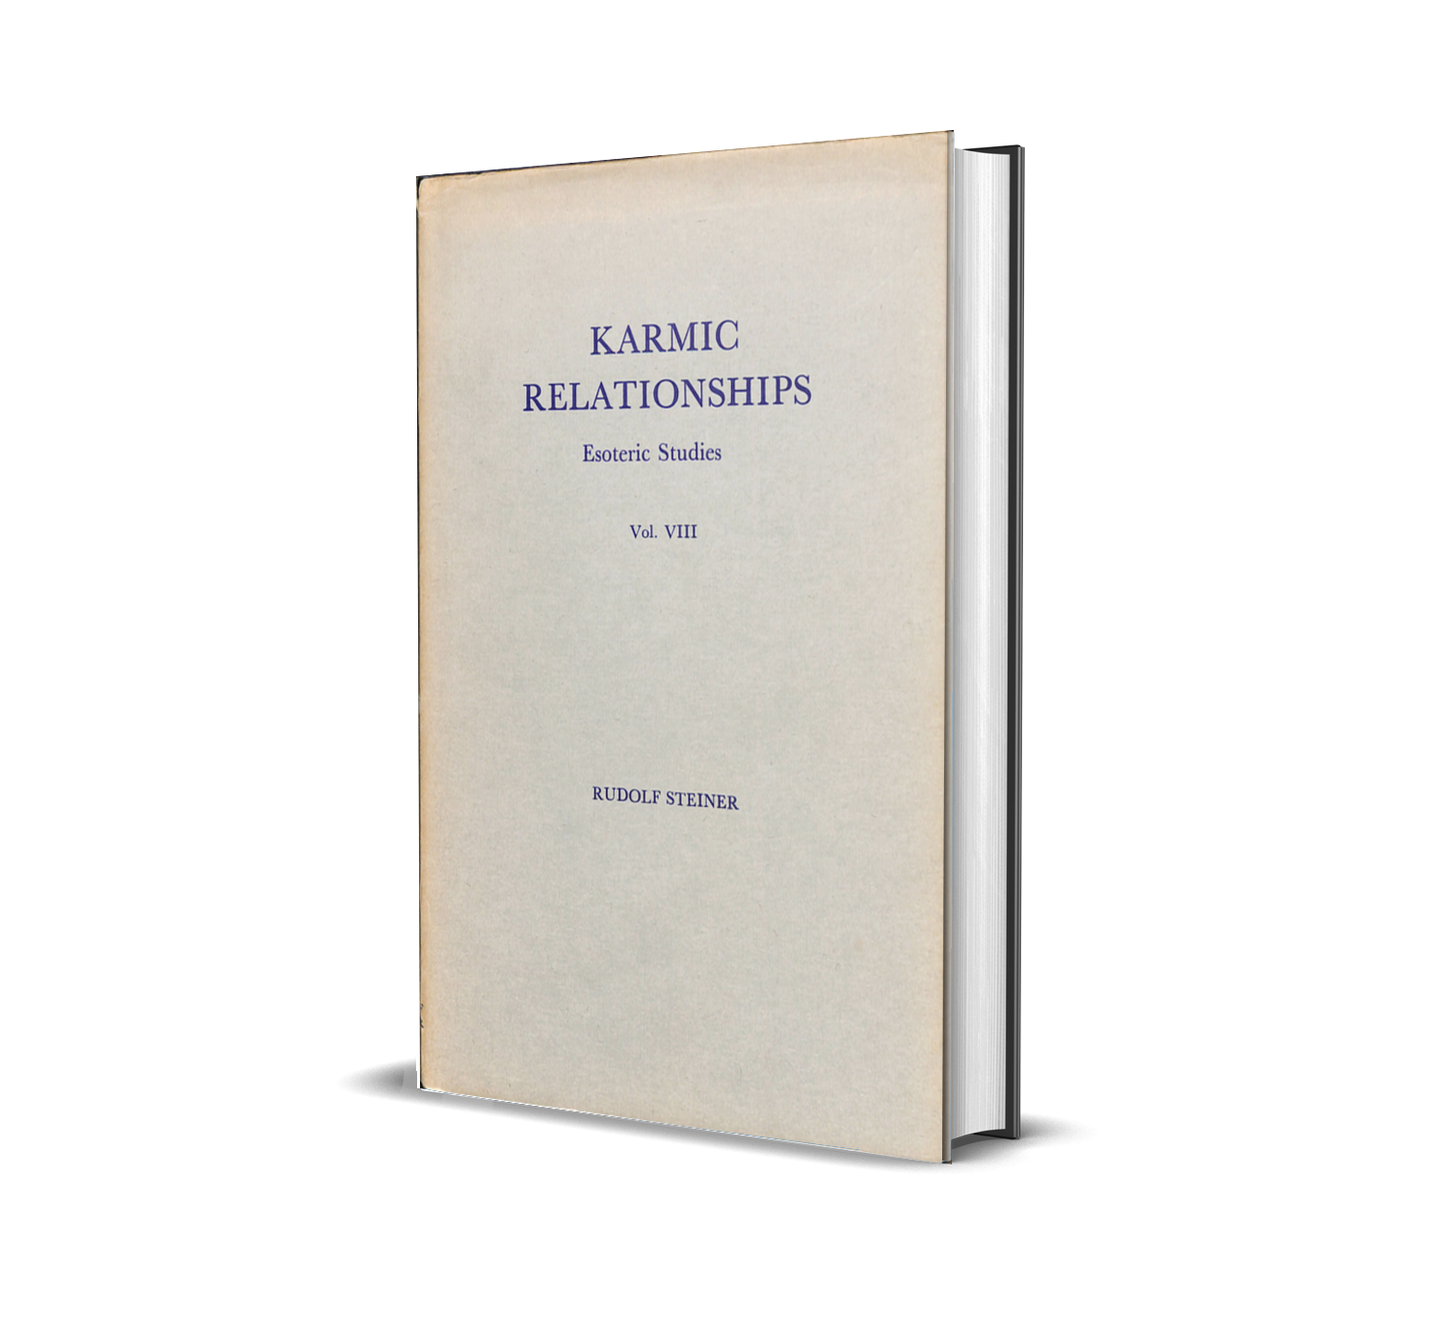 Karmic Relationships Vol. VIII